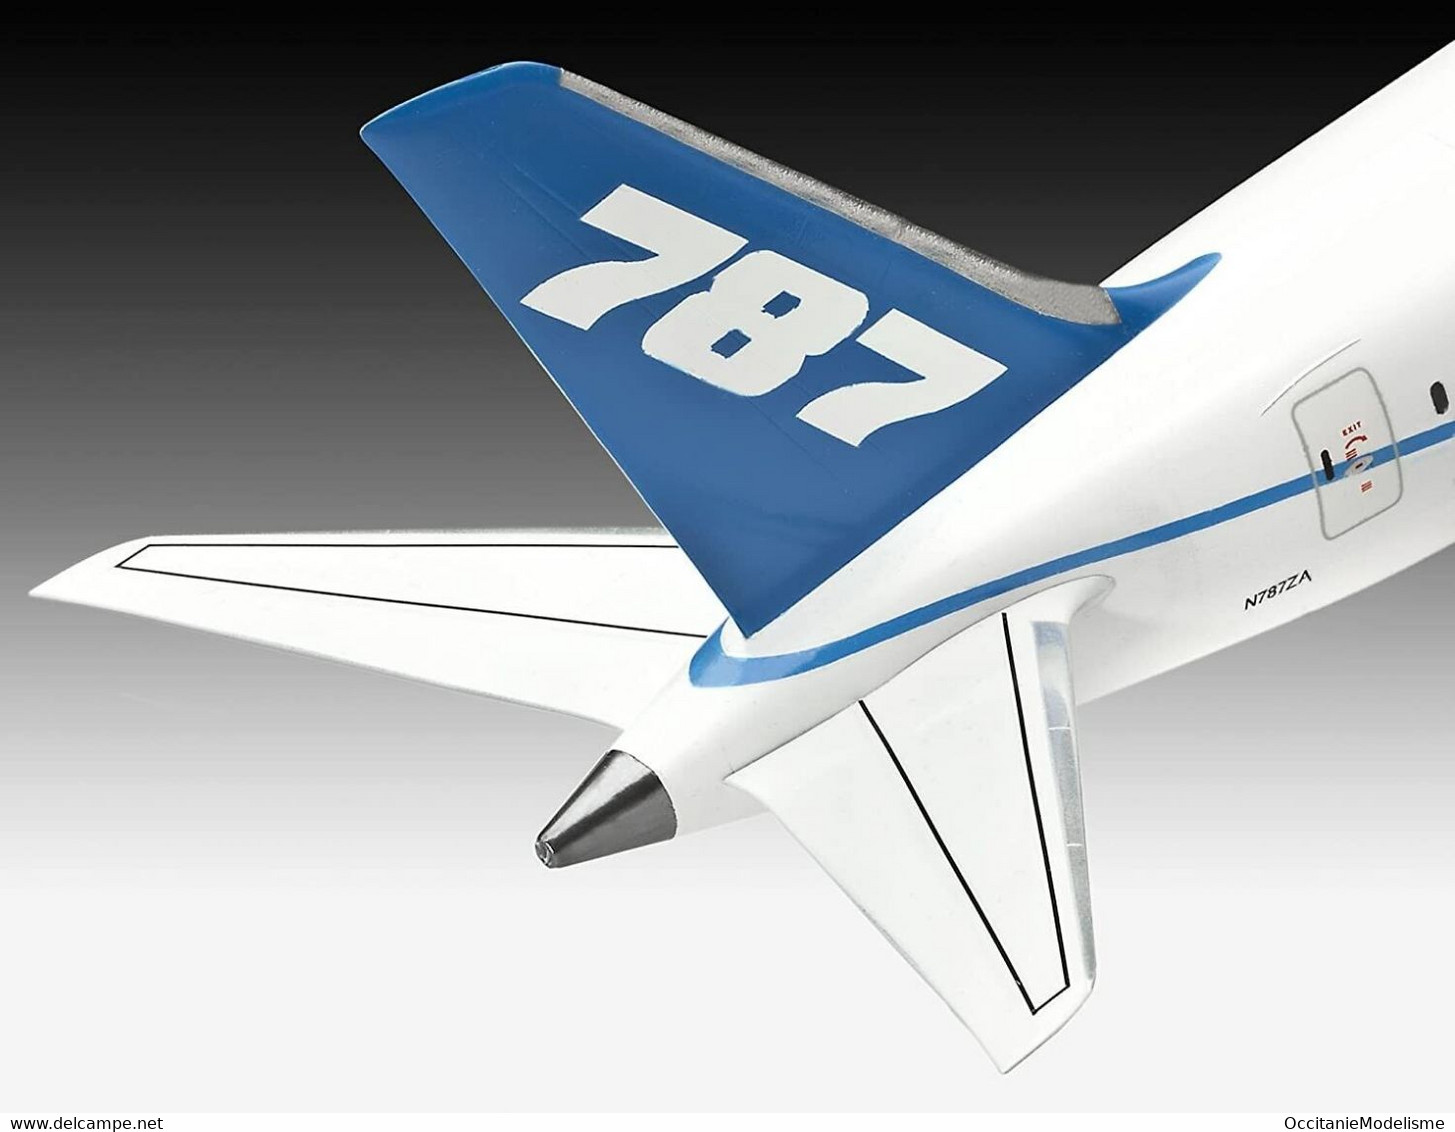 Revell - BOEING 787-8 Dreamliner Maquette Avion Kit Plastique Réf. 04261 1/144 - Avions